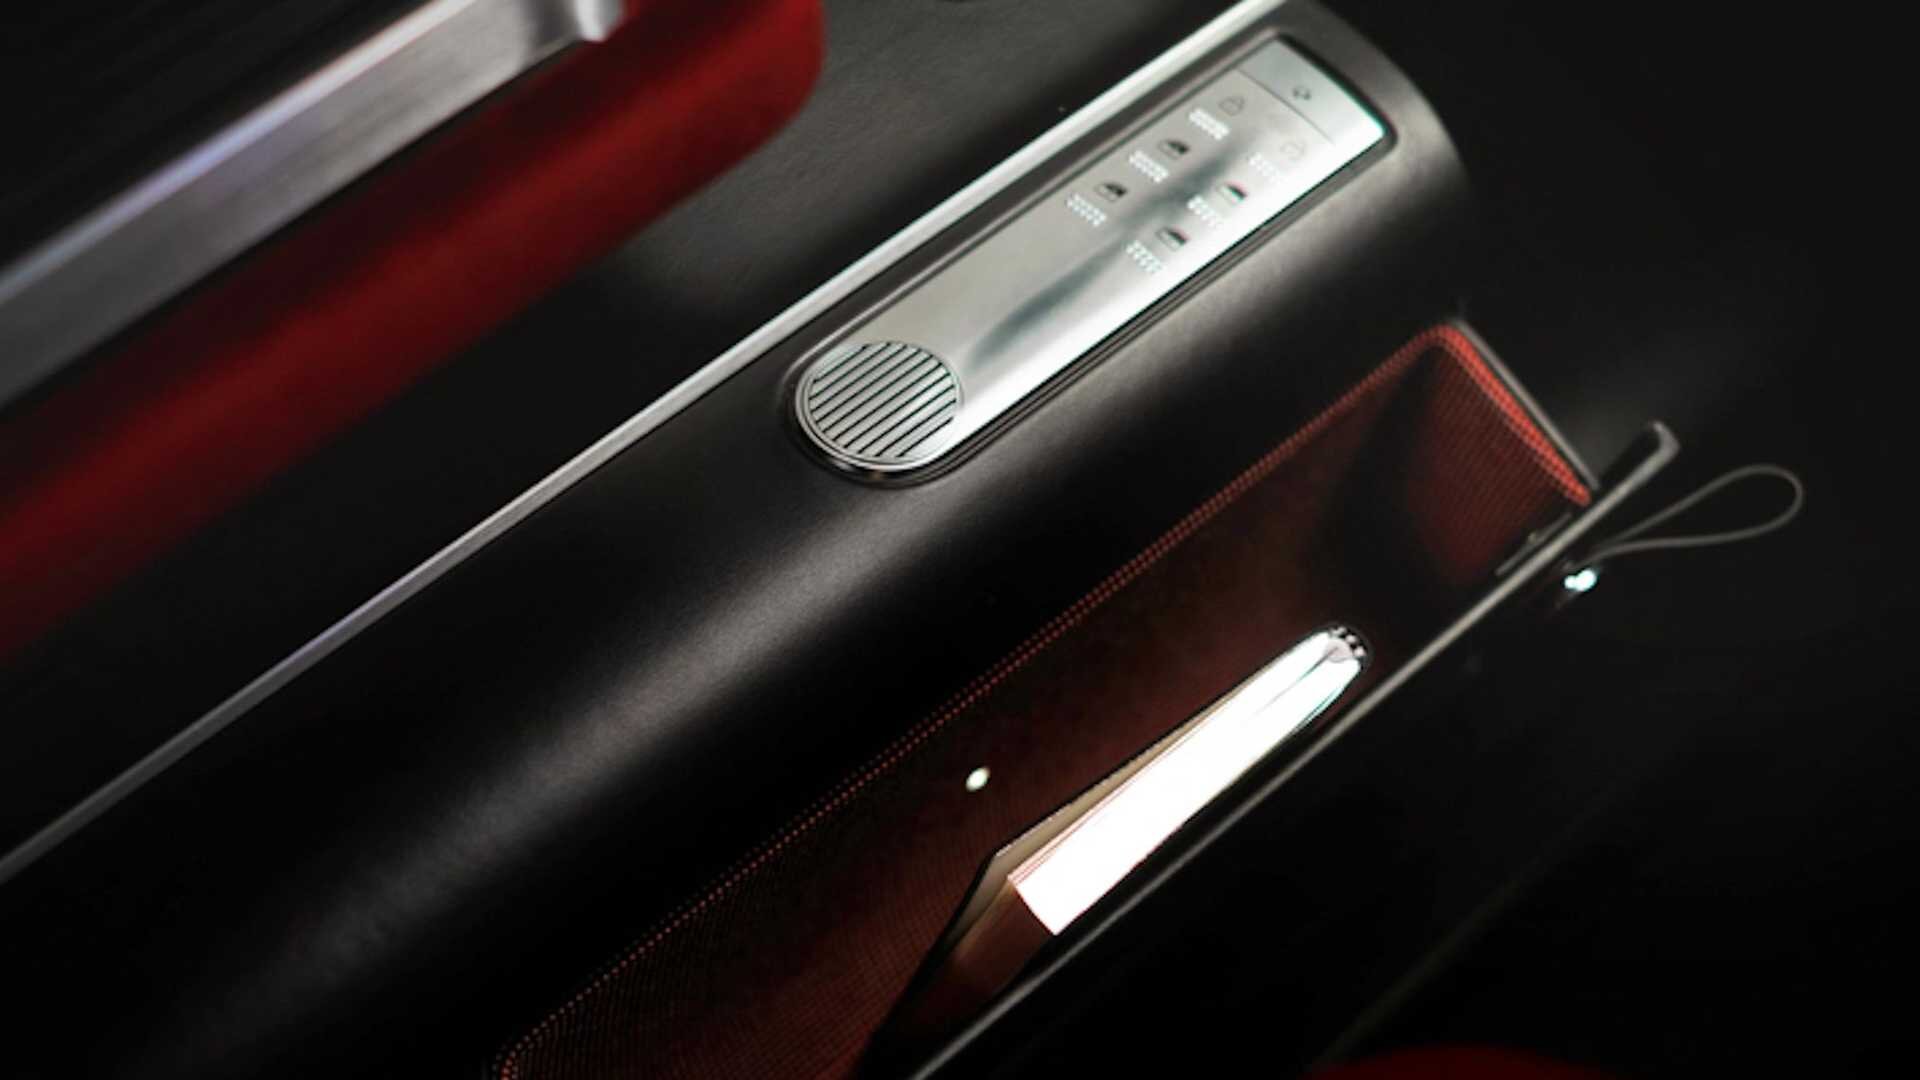 Электрифицированный Hyundai Grandeur получает те же светодиодные пиксельные фонари, что и рестомод Pony Coupe, а также современную приборную панель с сенсорным экраном.